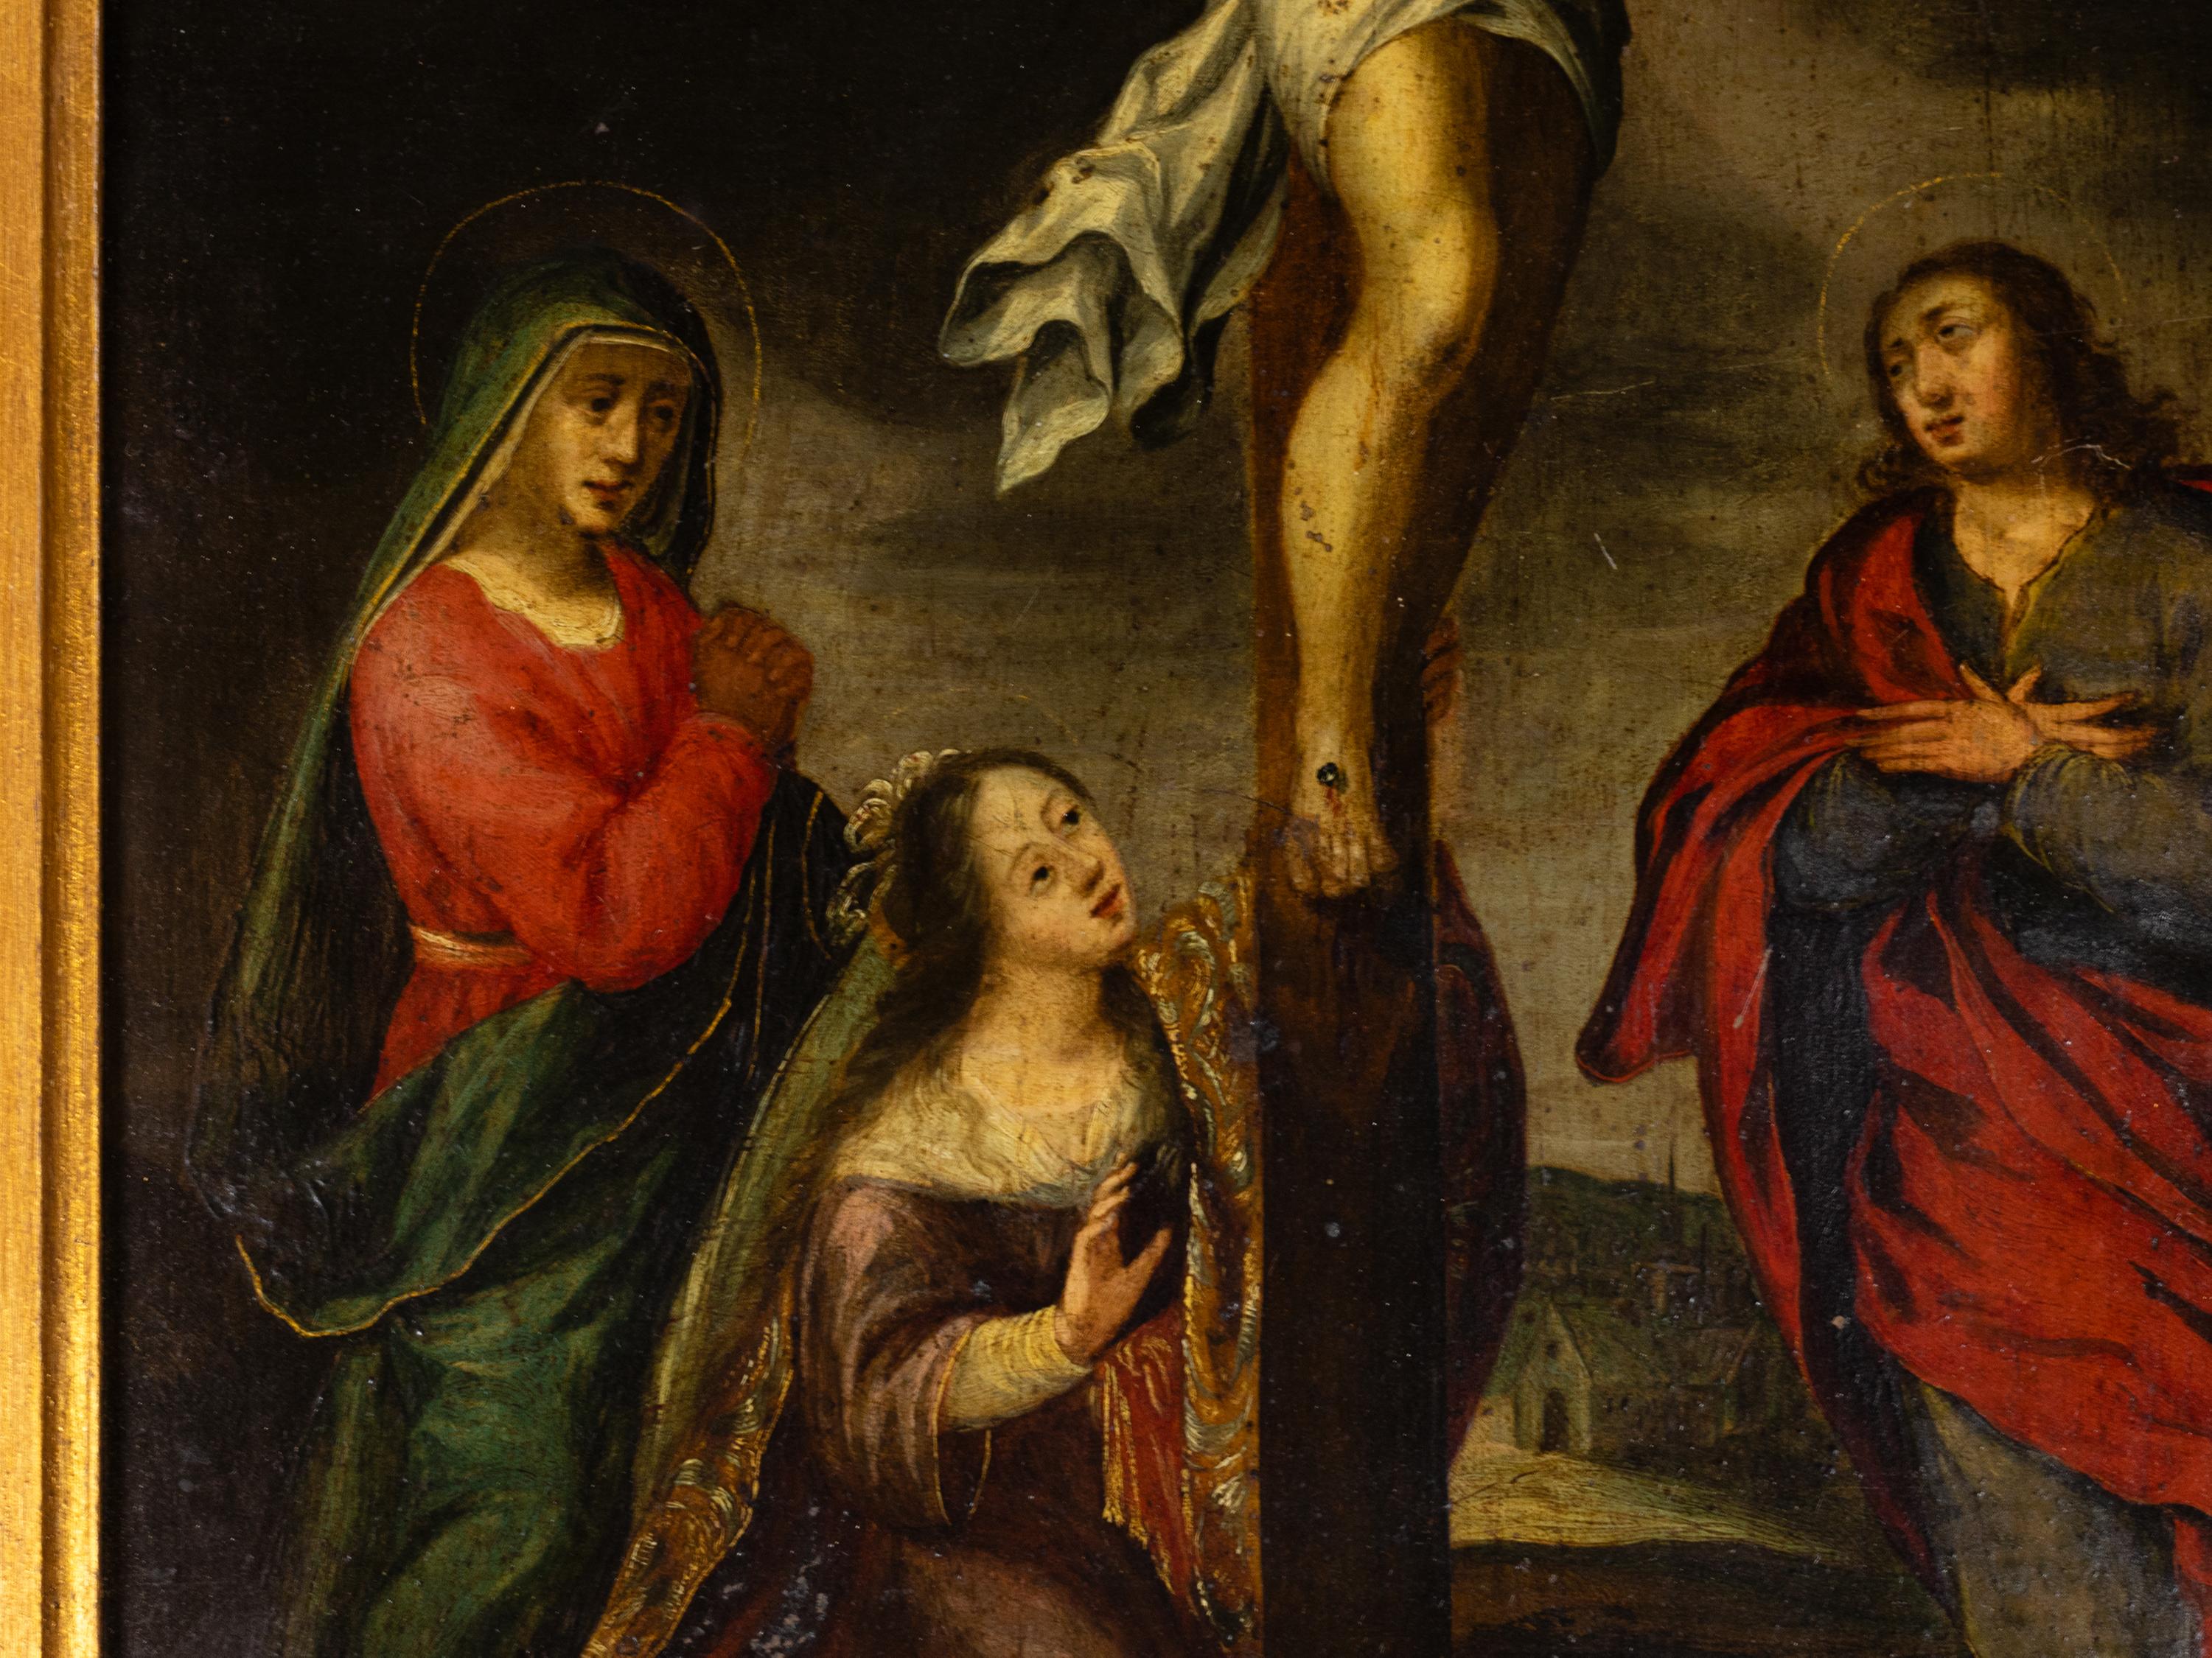 Ein italienisches Gemälde aus dem 17. Jahrhundert, das den gekreuzigten Christus in Begleitung der drei Marias zeigt: Maria Magdalena, Maria Salome und Maria von Kleophas bei der Betrachtung seines Opfers, ein von der flämischen Schule inspiriertes